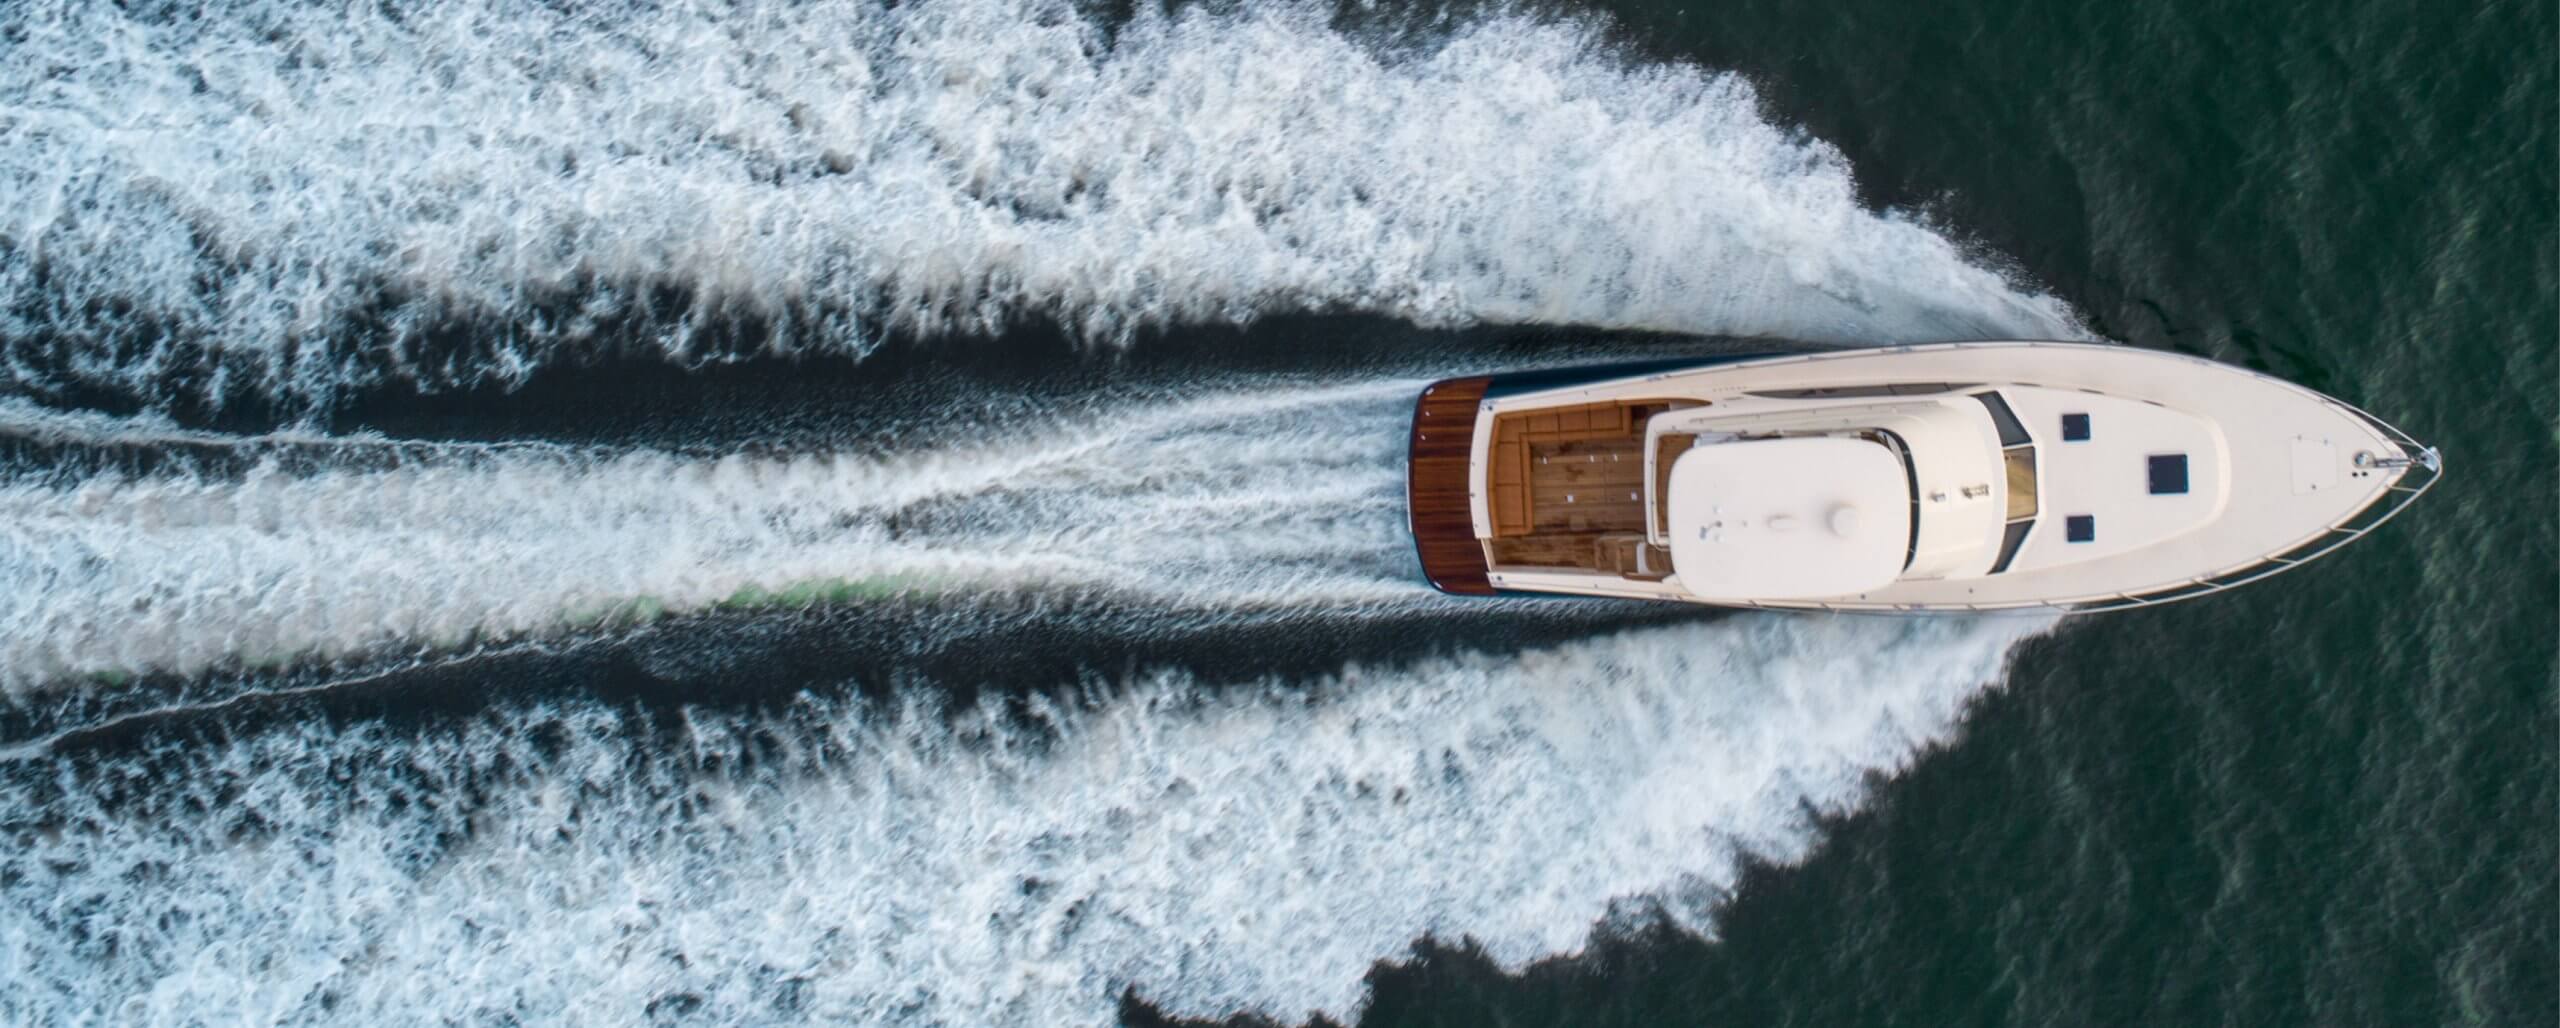 42 ft motor yacht